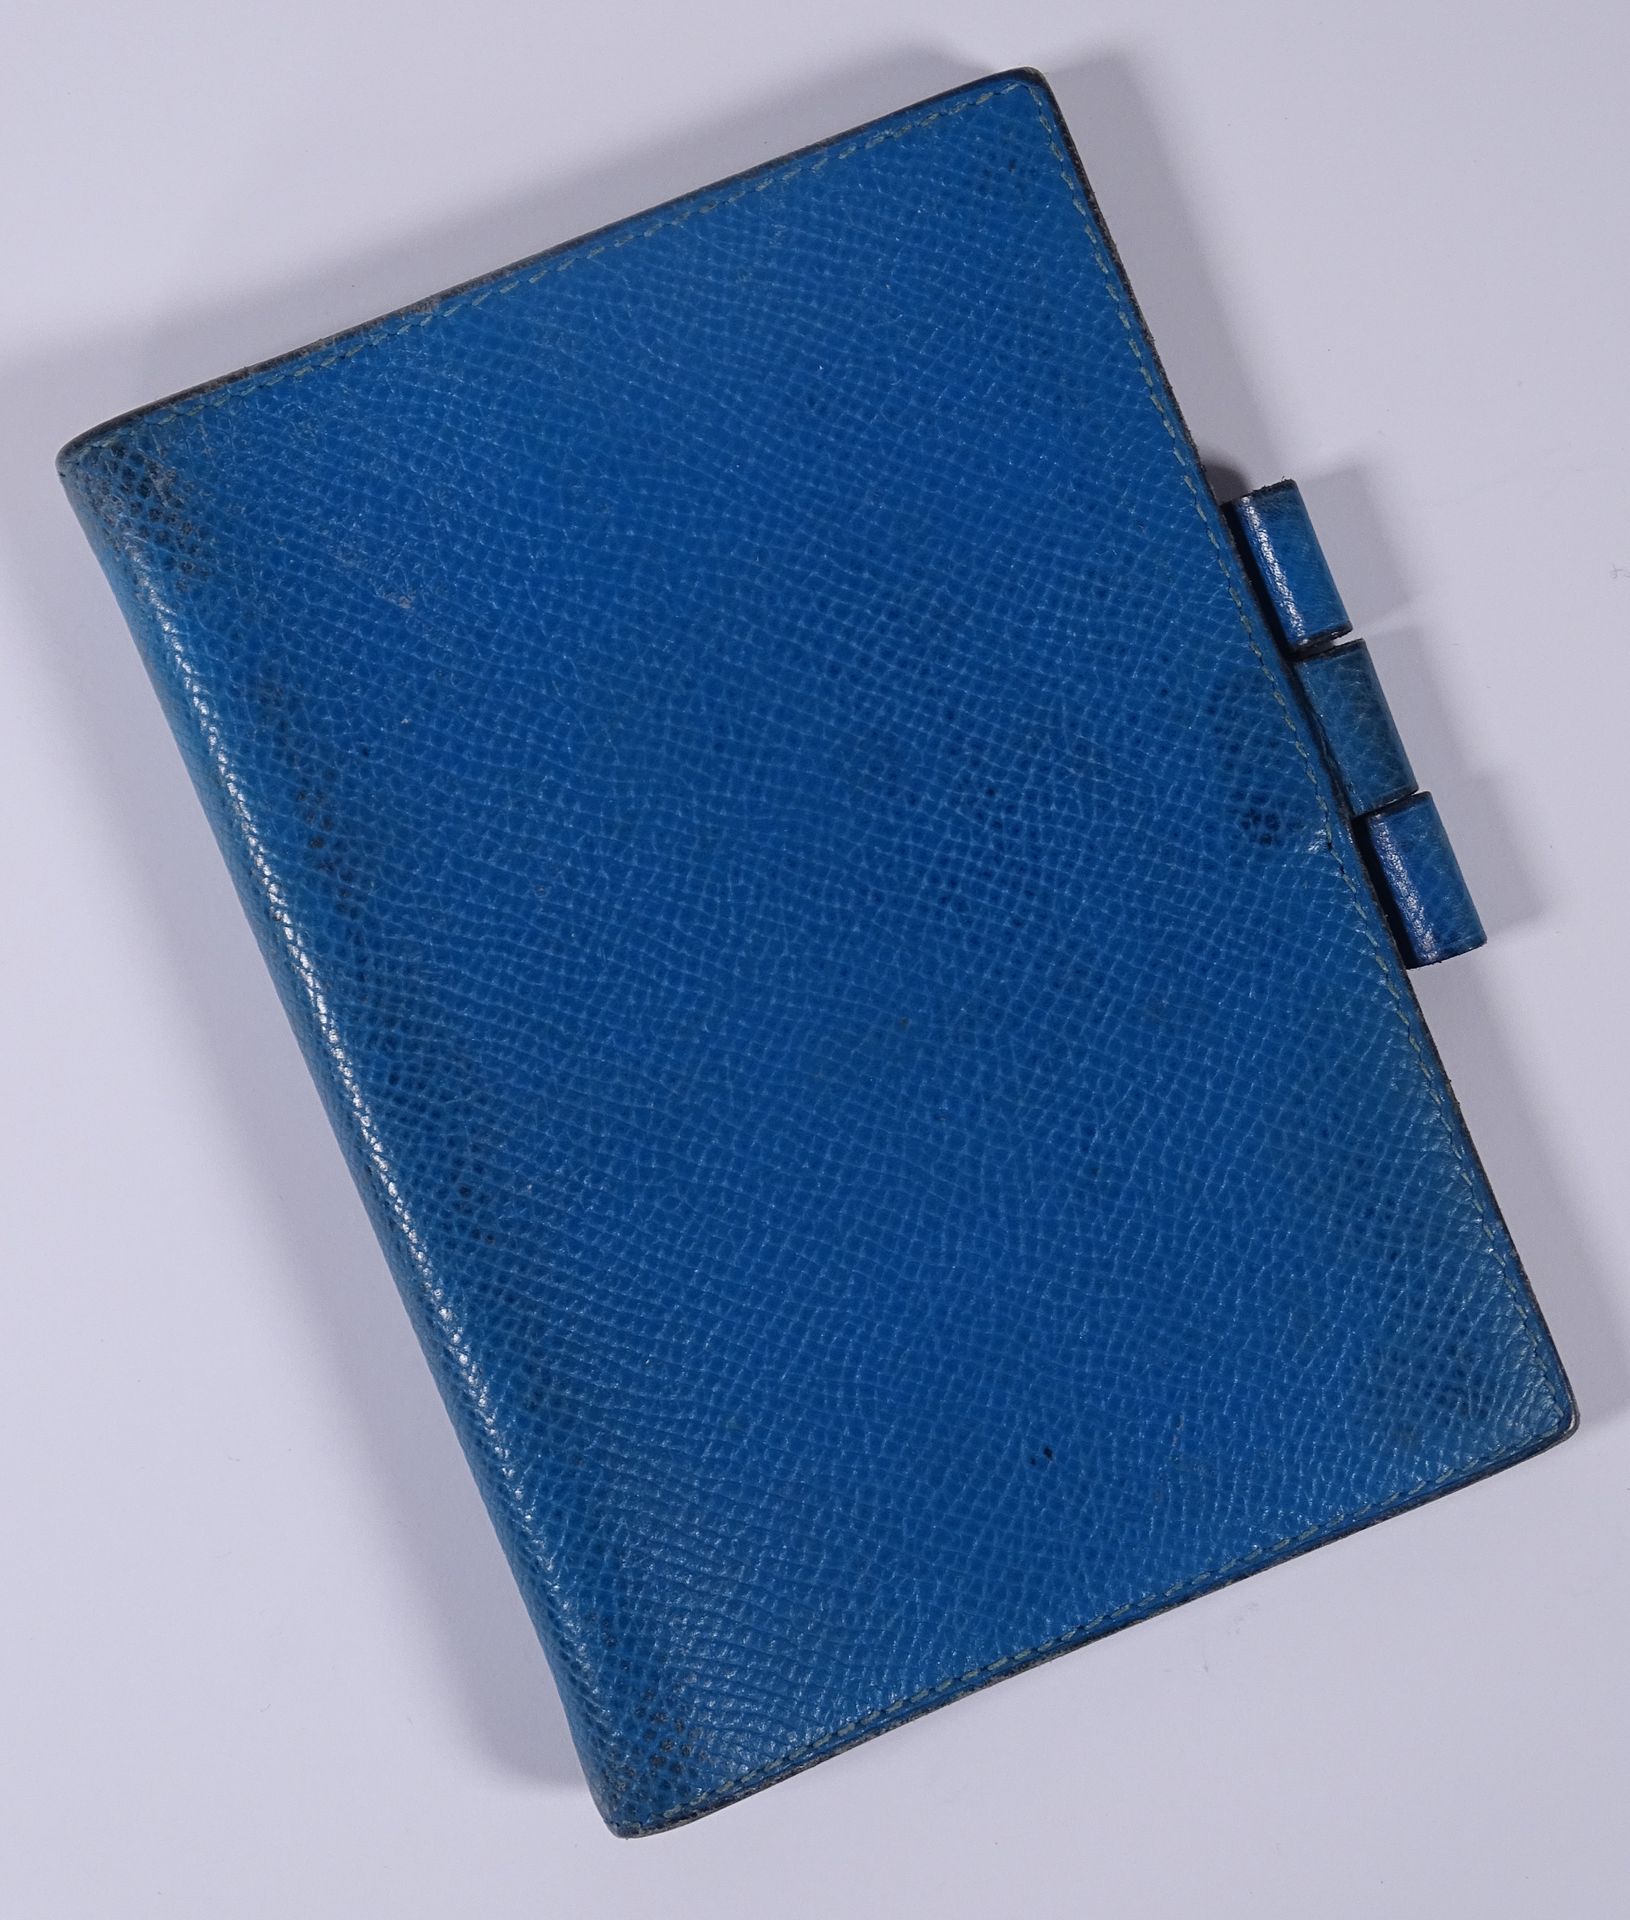 HERMES 蓝色皮革记事本夹。

13,5 x 9,5厘米。

(缺少笔记本和笔，轻微磨损）。